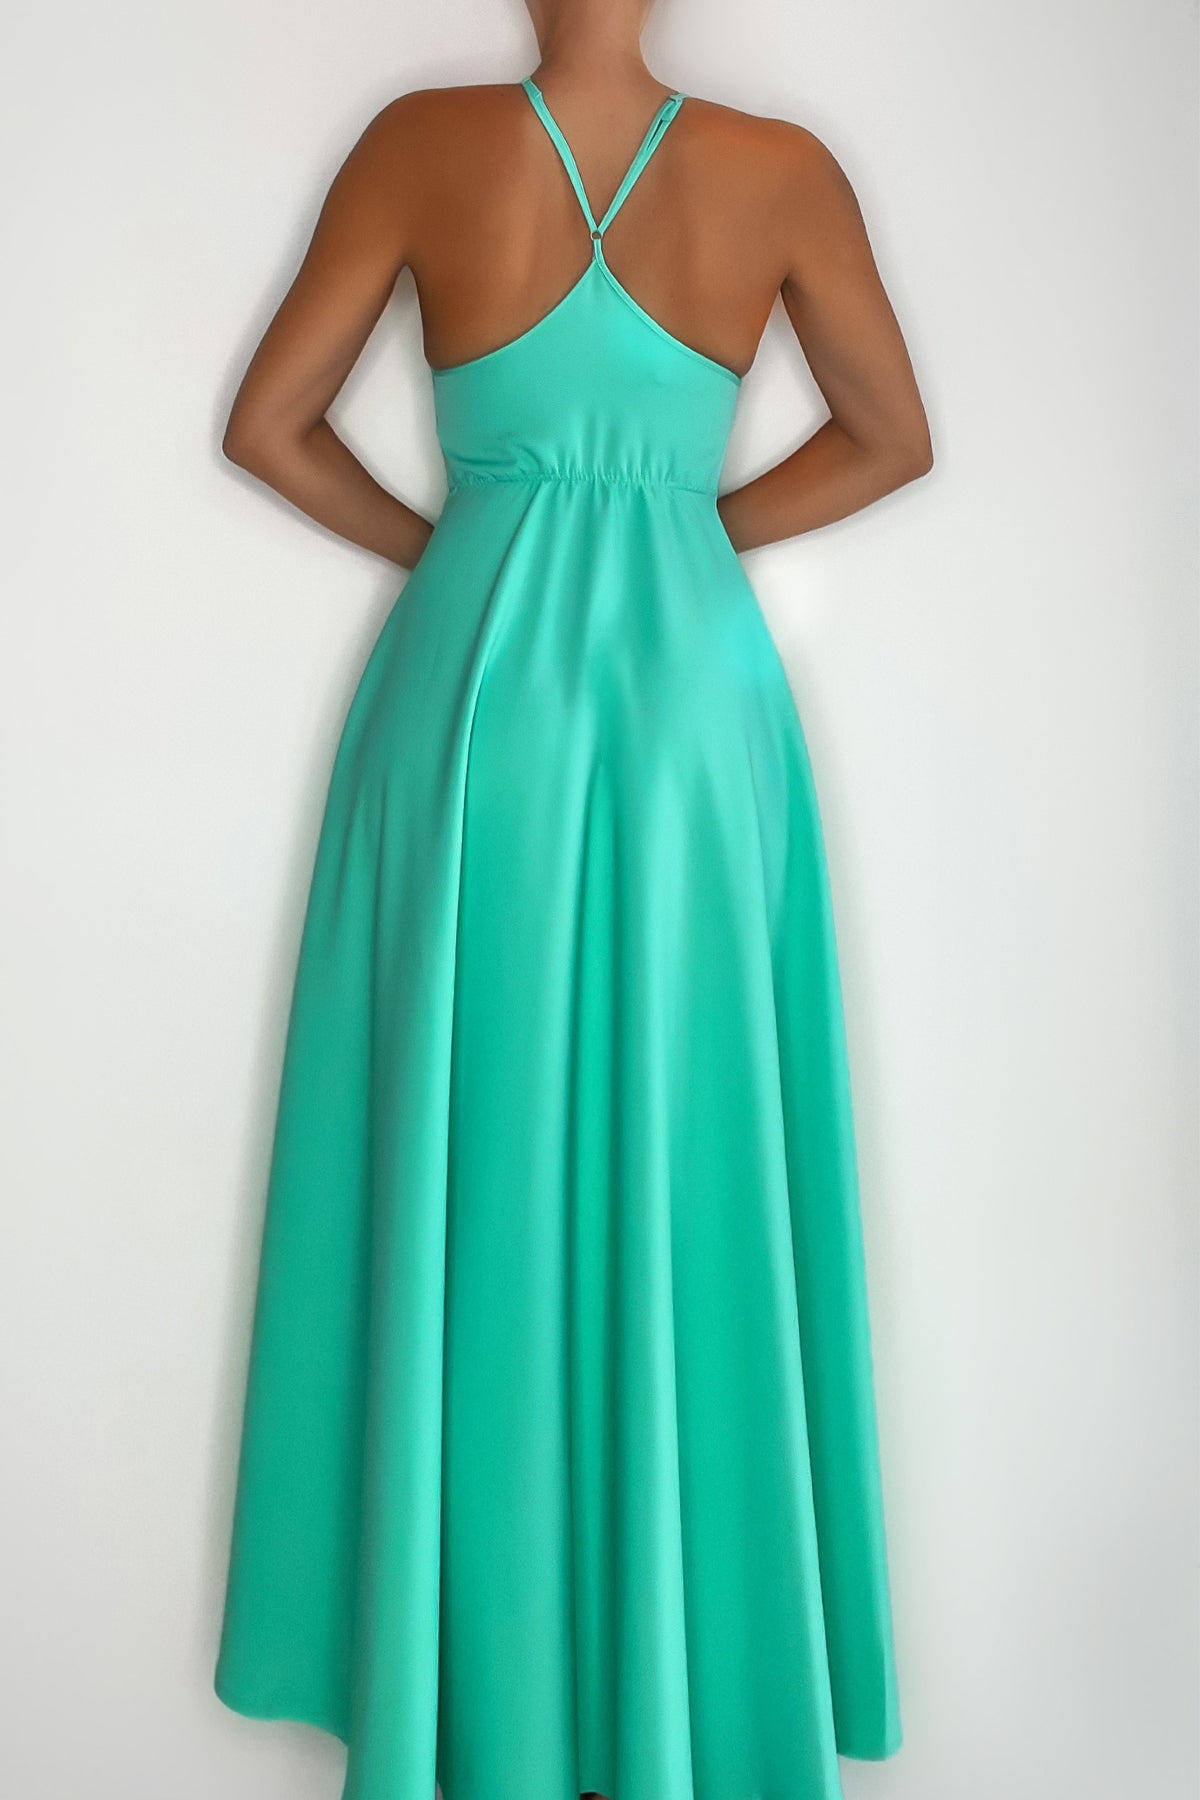 Riviera Tiffany Dress